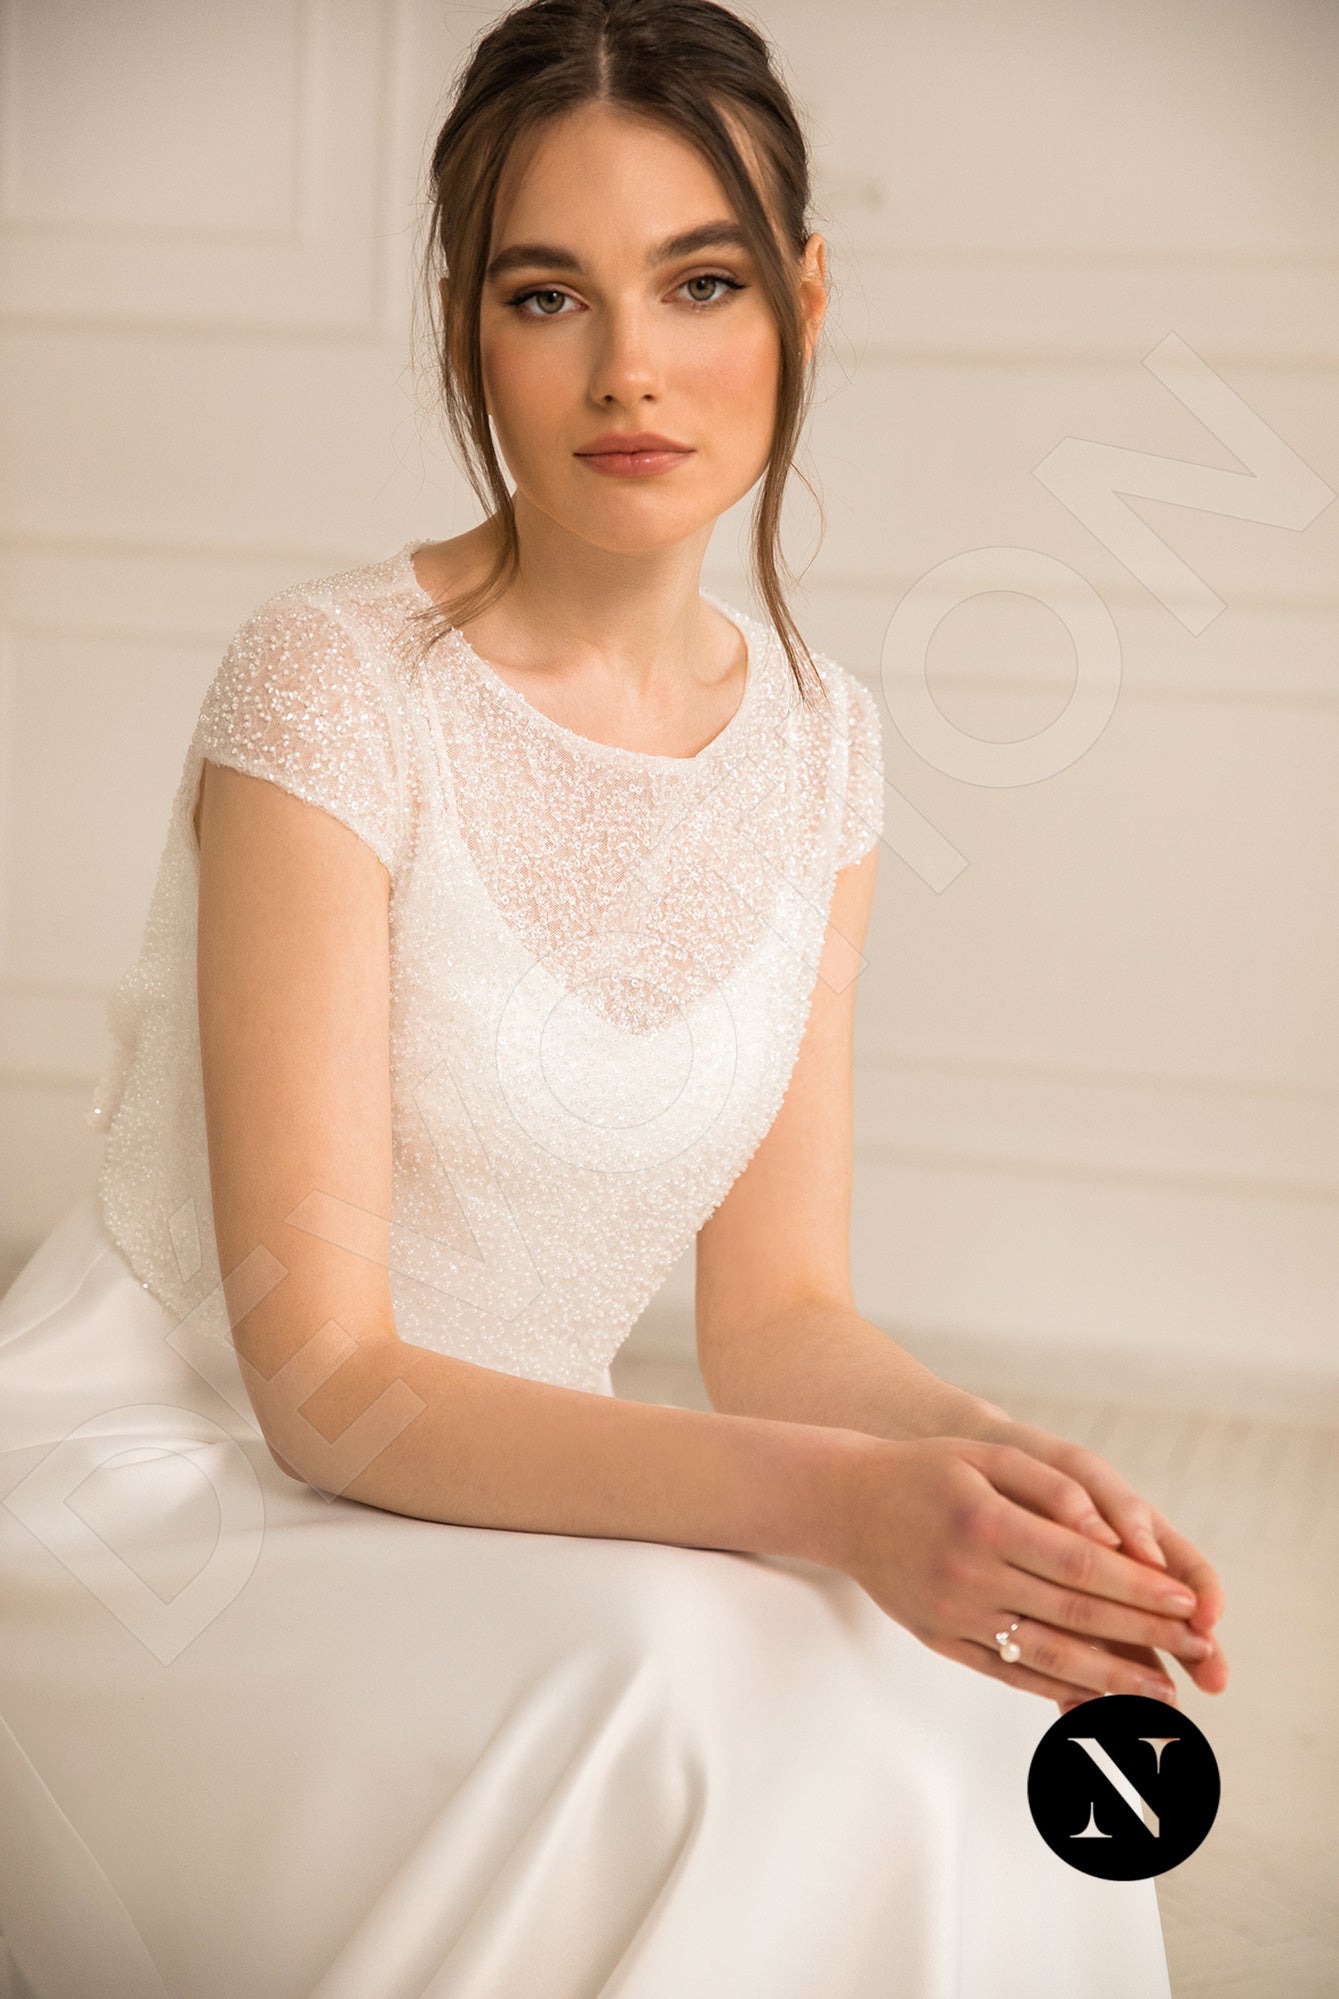 Gabanna Crystal Full back A-line Long sleeve Wedding Dress 2